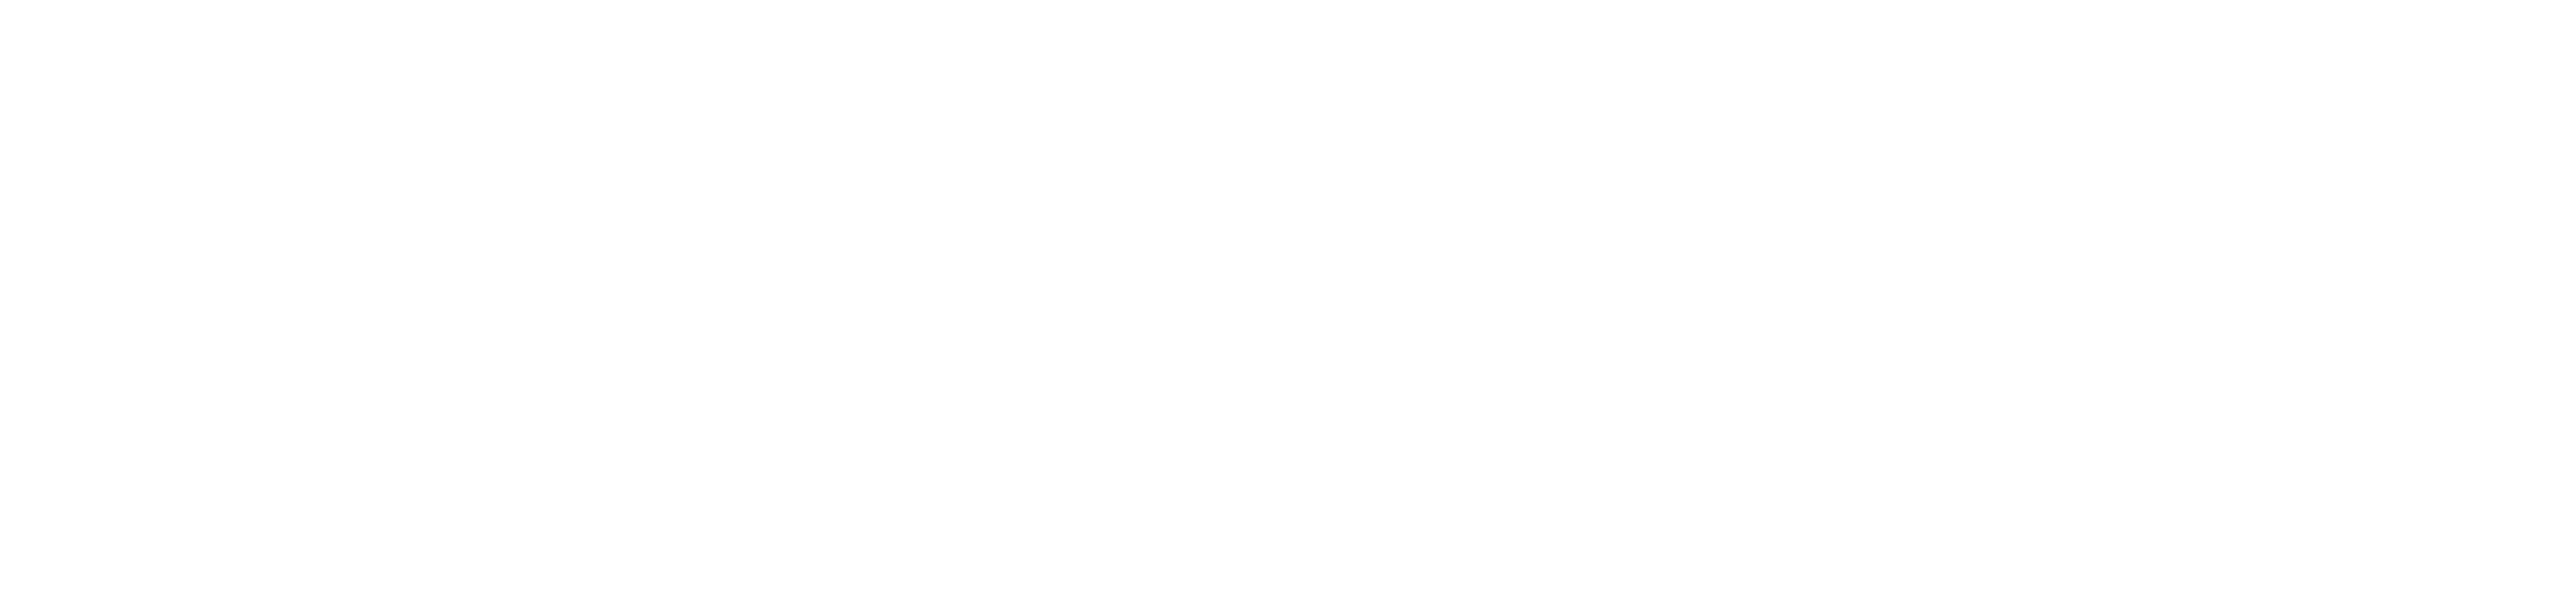 MIT Schwarzman College of Computing